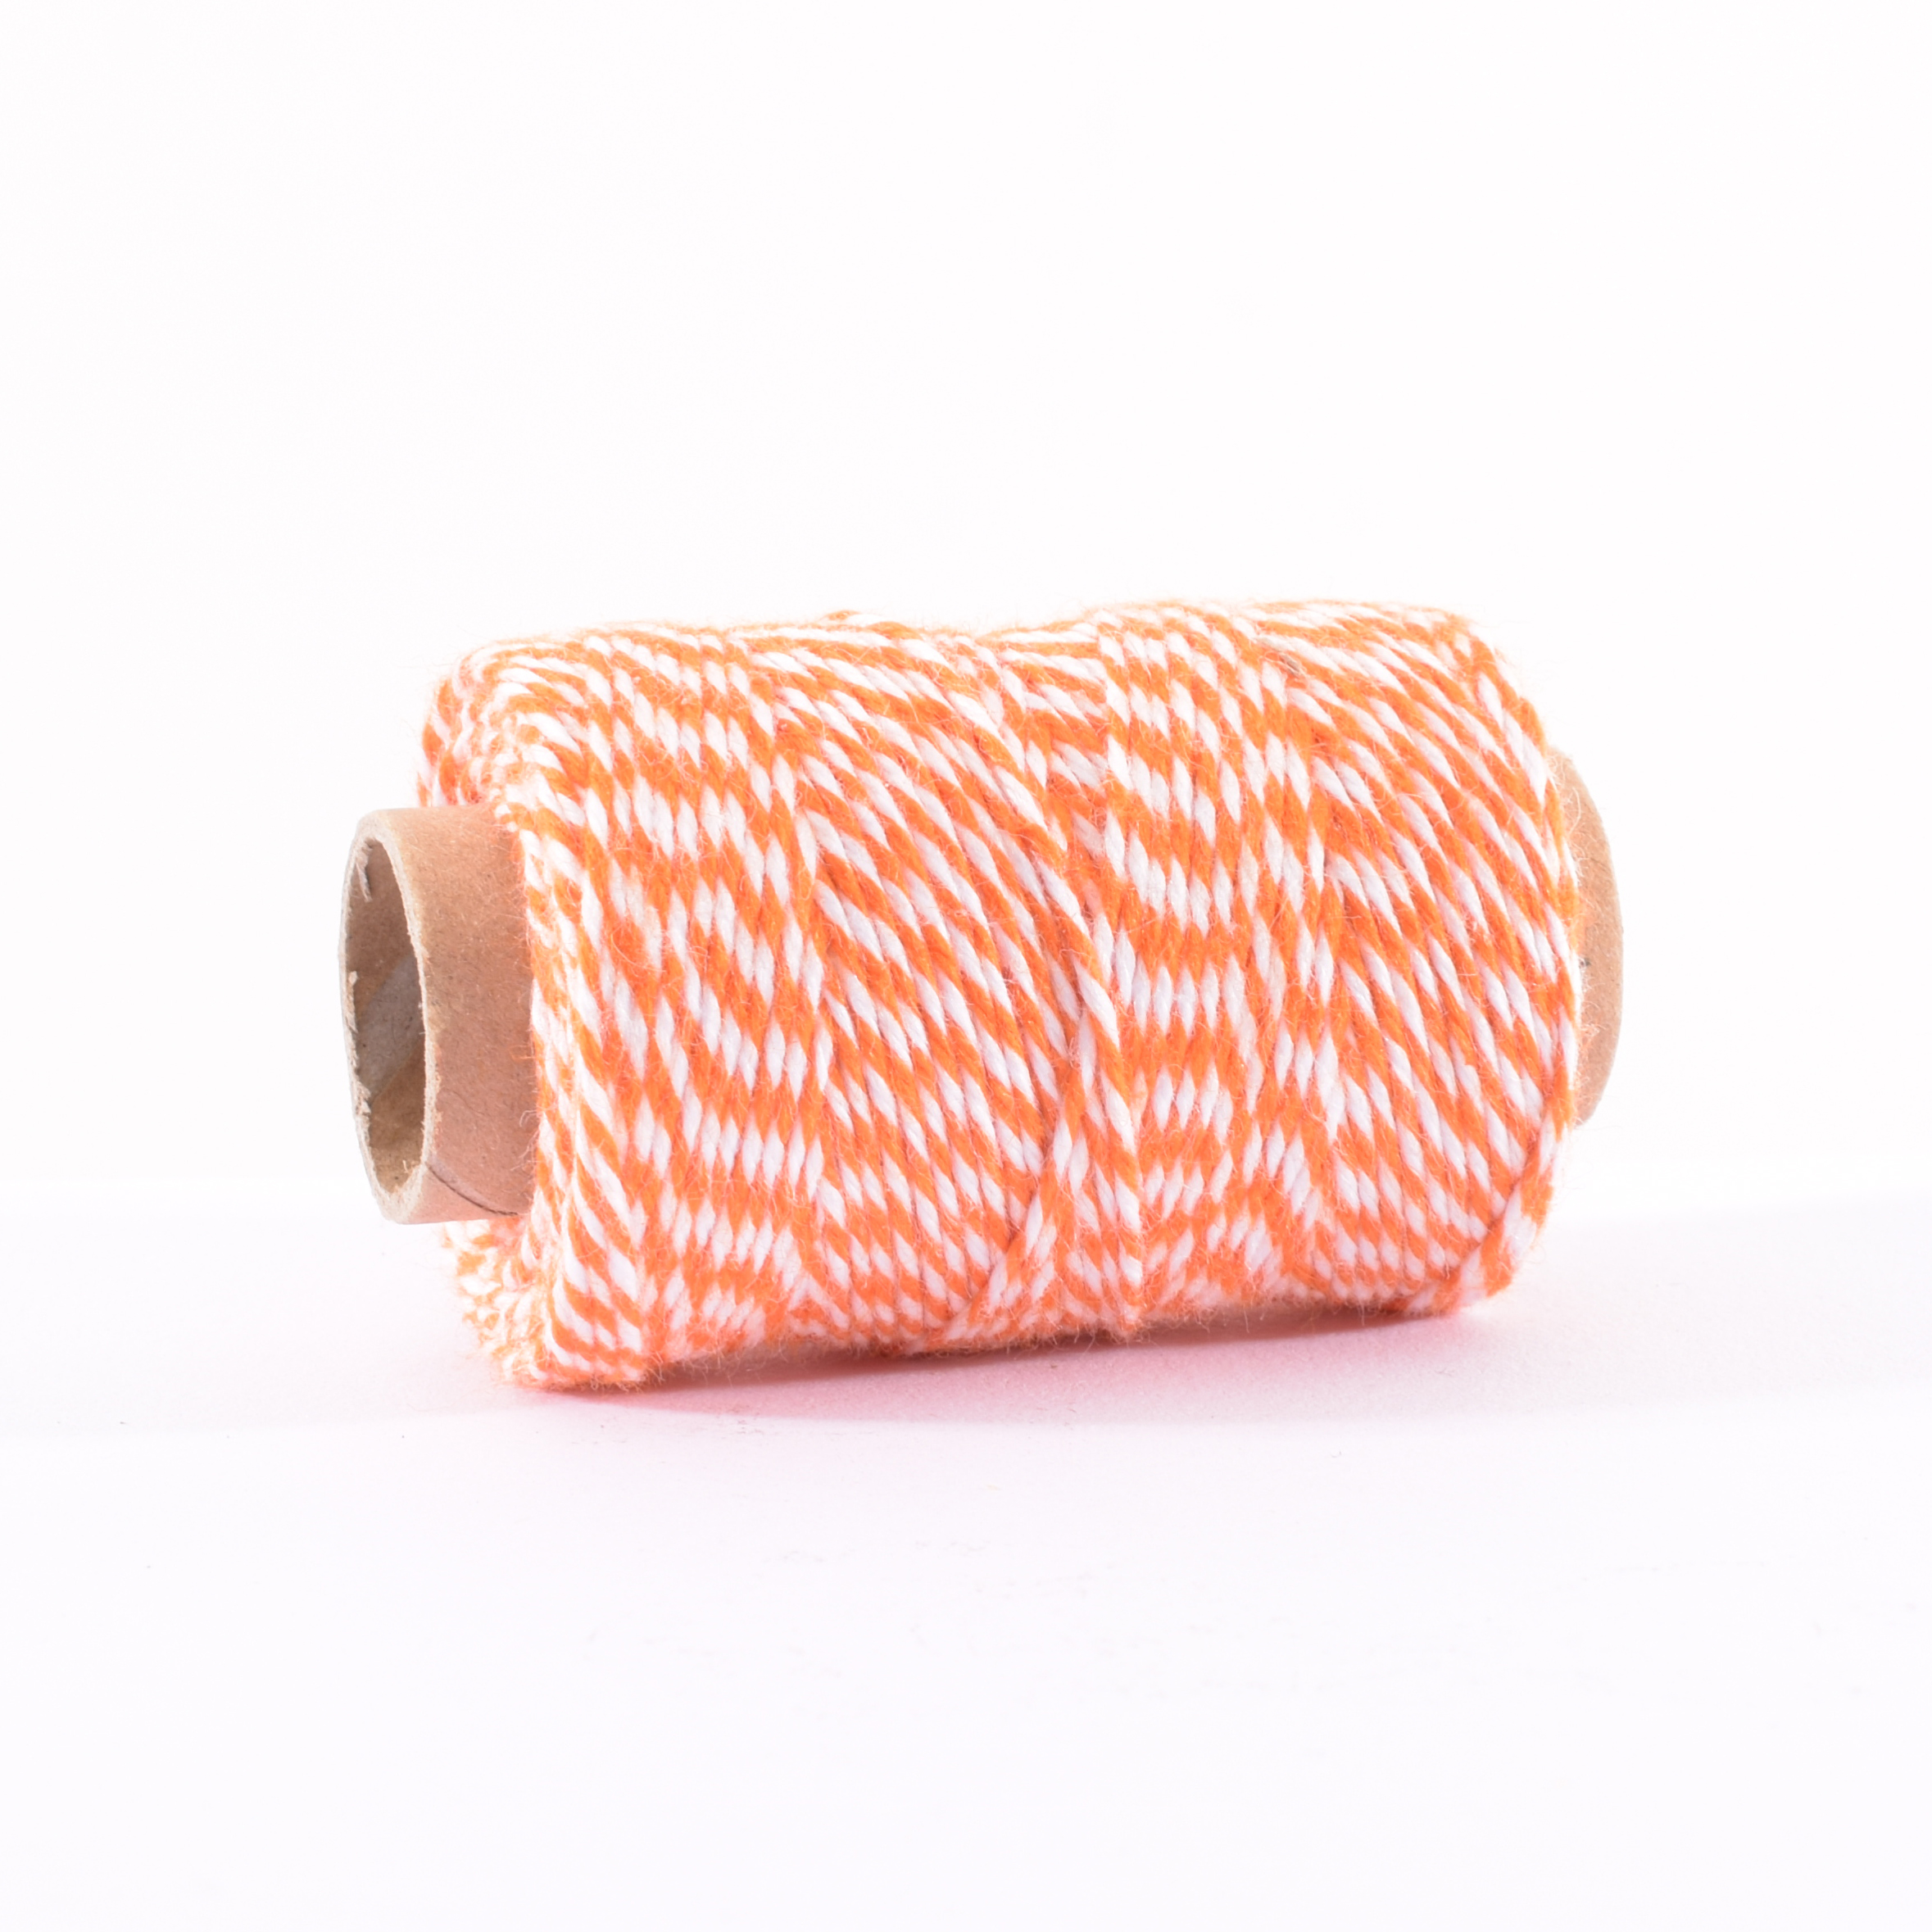 Vaessen Creative • Bakers Twine 45m Orange-White 1mm wire